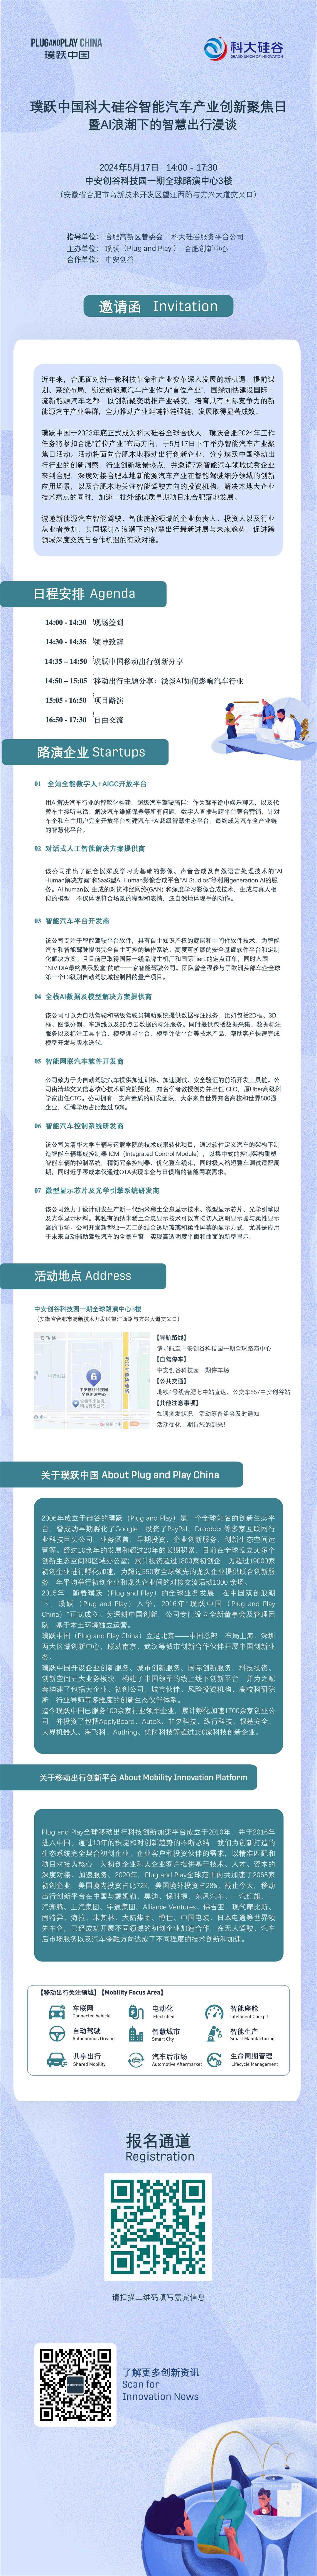 0517璞跃中国科大硅谷智能汽车产业创新聚焦日 邀请函.jpg